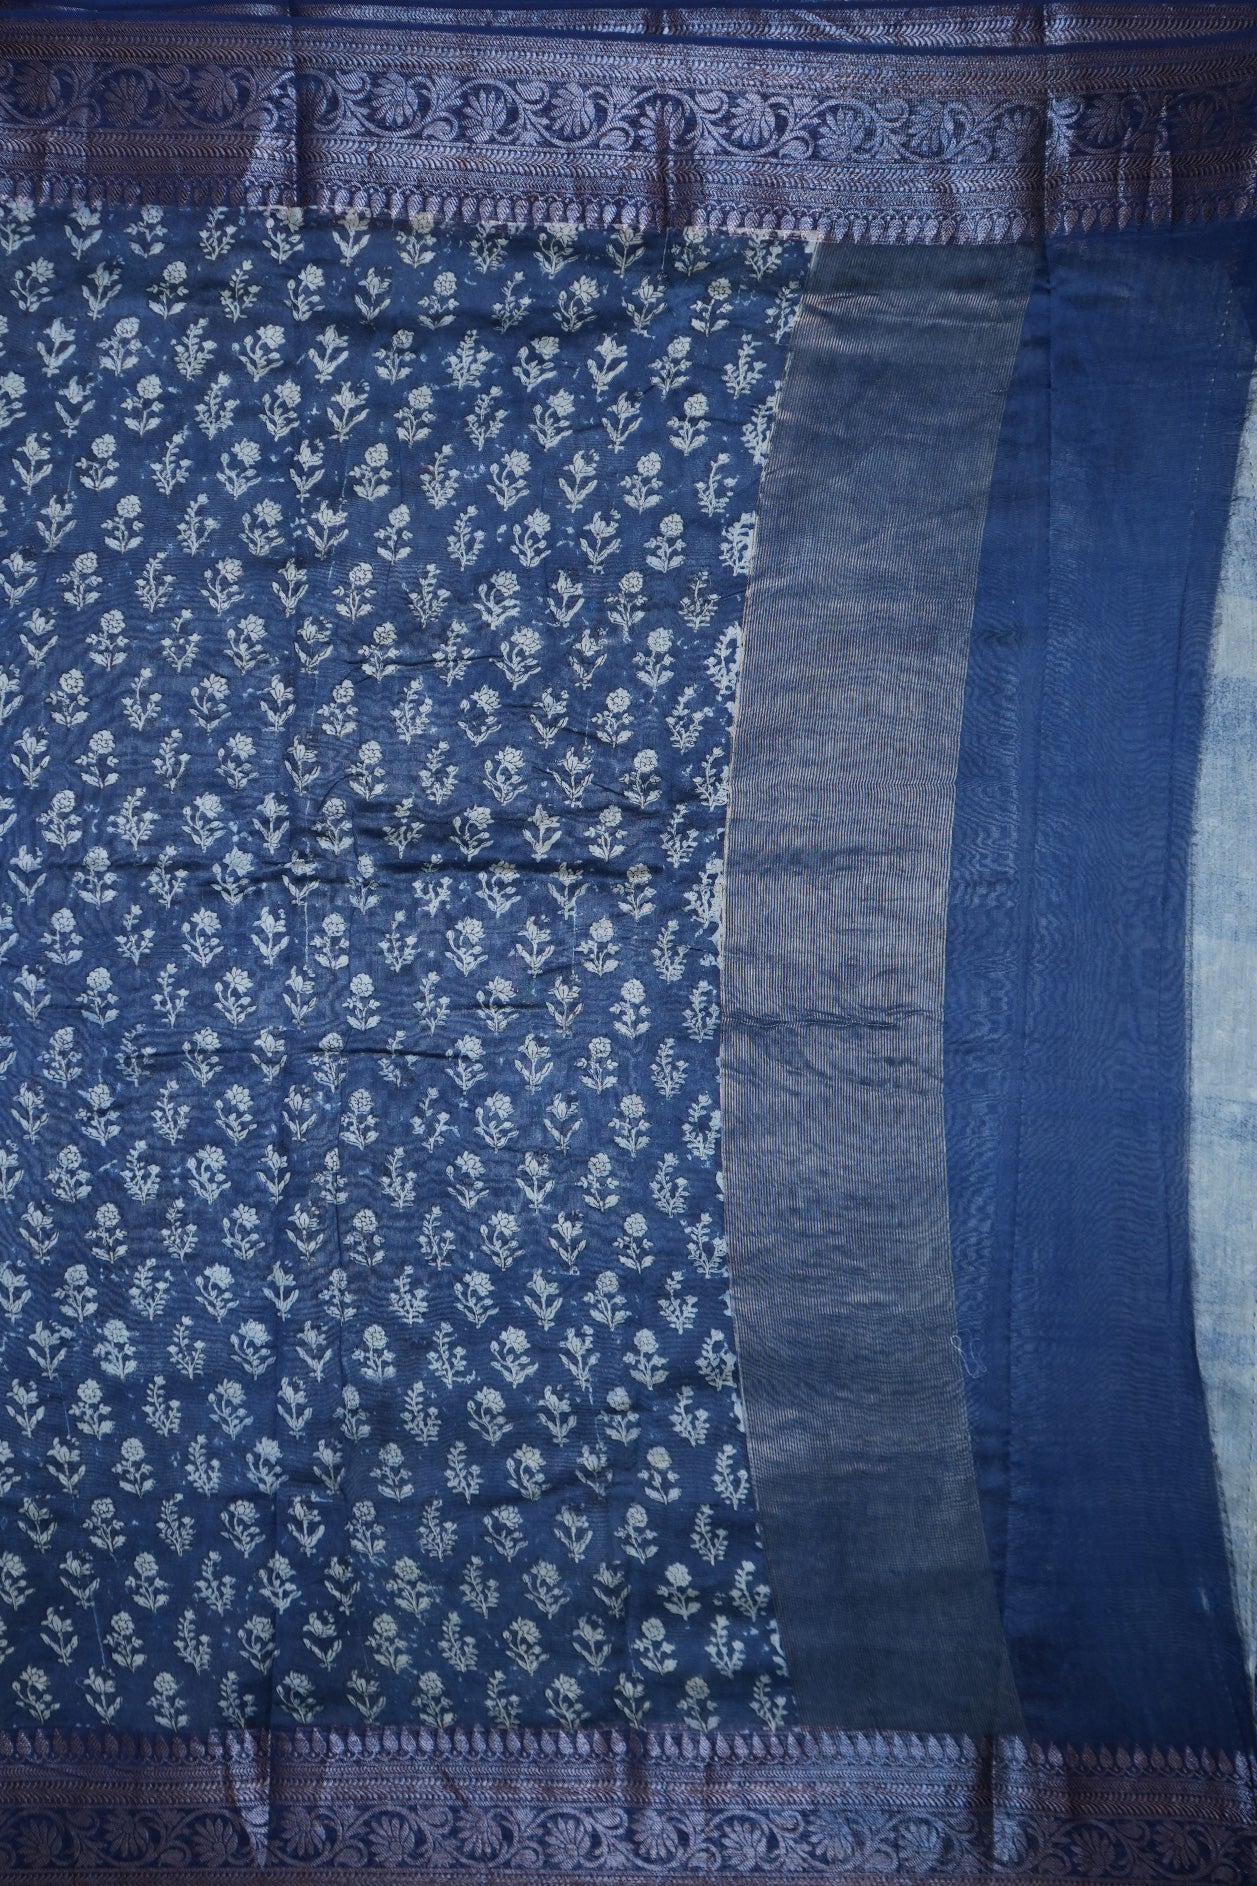 Floral Threadwork Border Prusssian Blue Chanderi Silk Cotton Saree